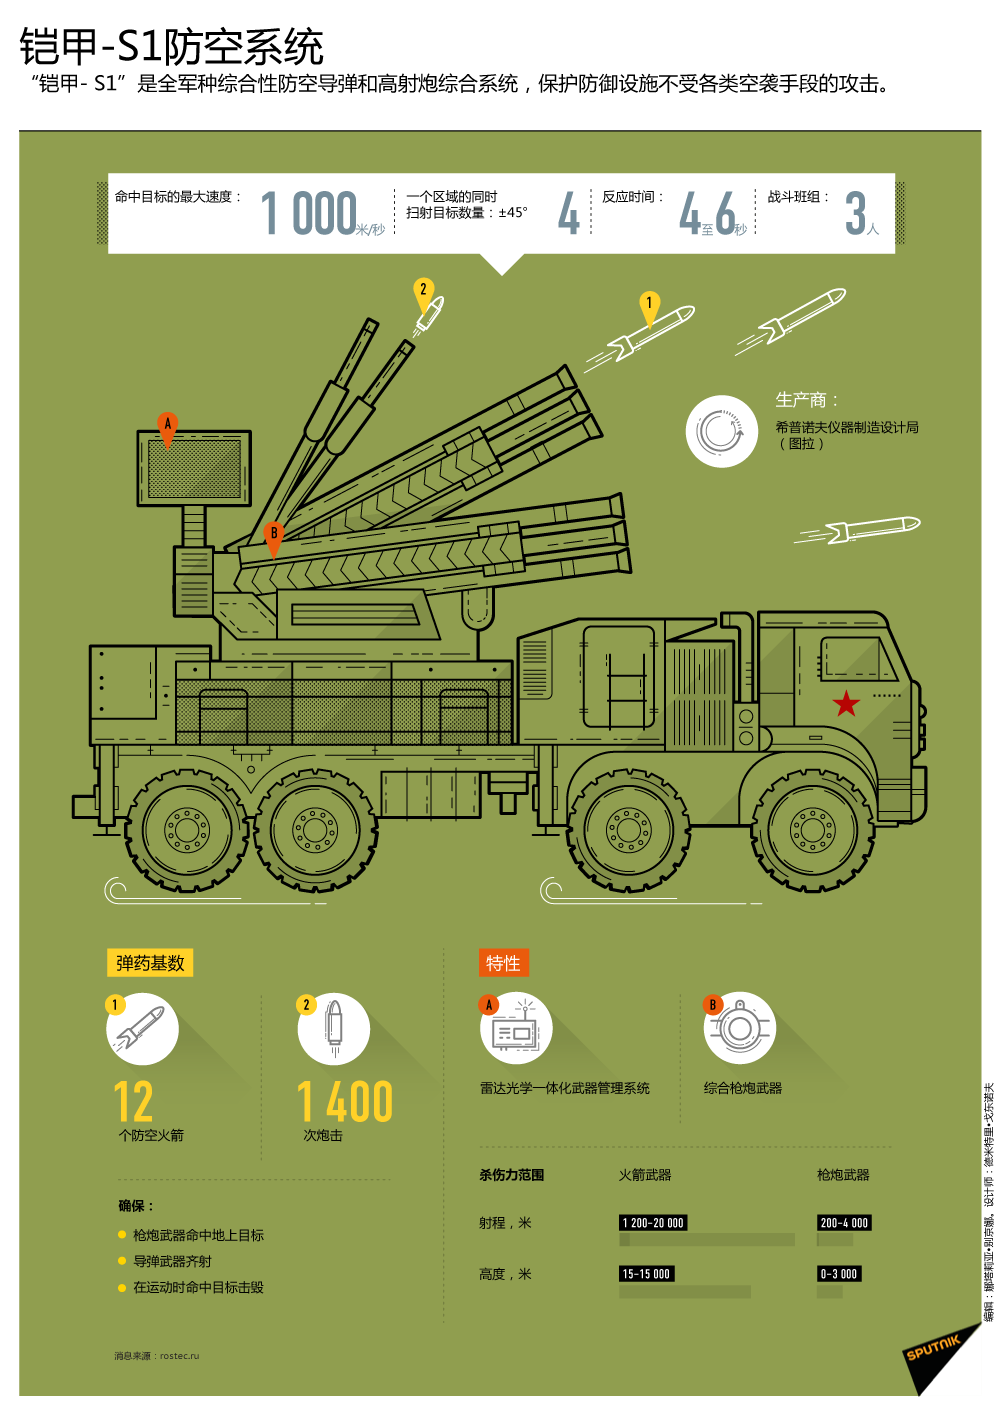 铠甲-S1防空系统 - 俄罗斯卫星通讯社